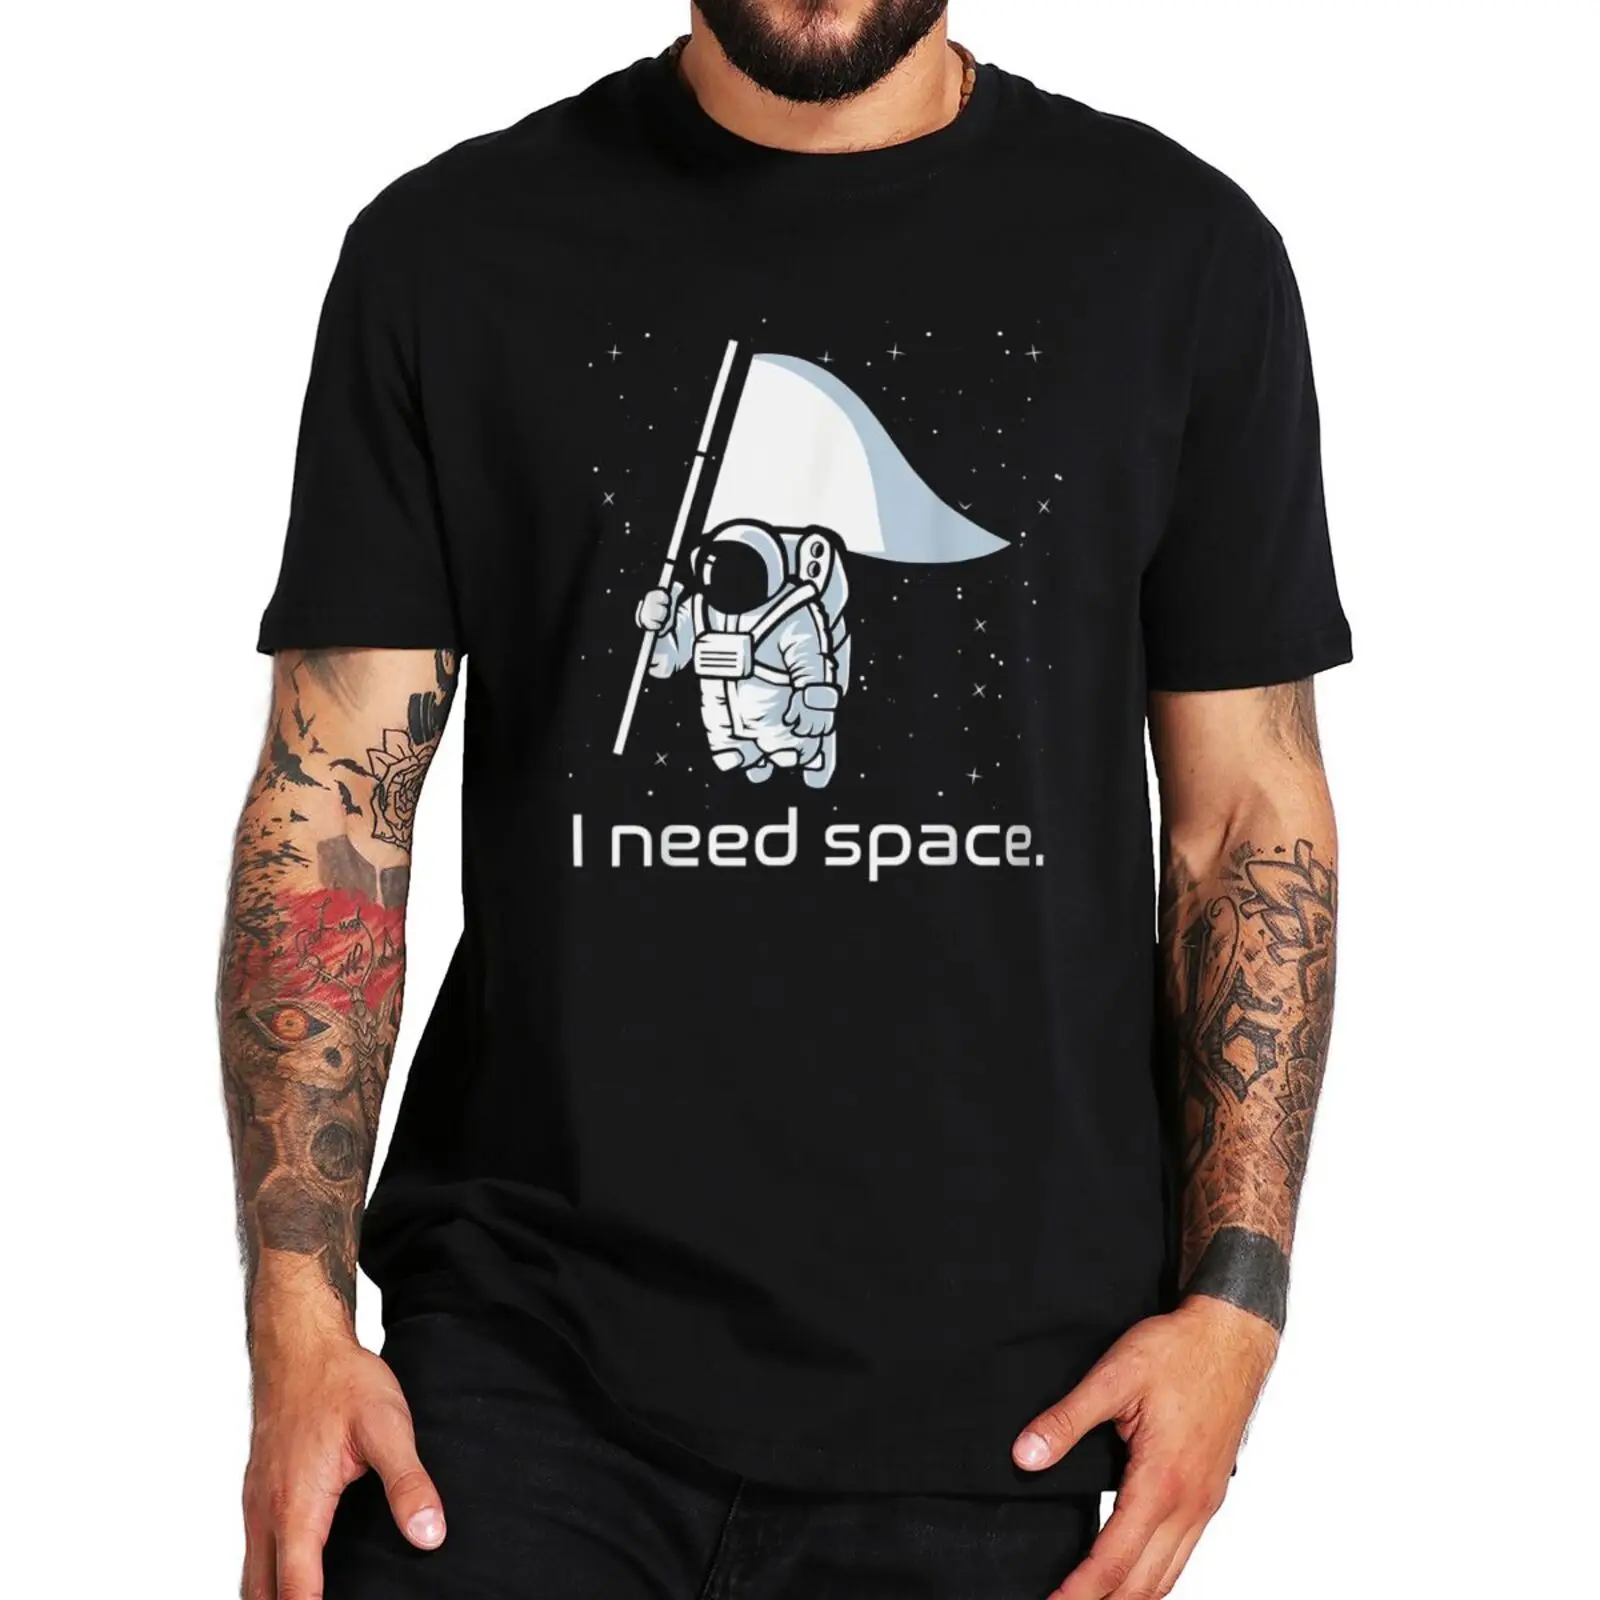 

Забавная футболка I Need Space, футболка с галактикой, космическим астронавтом, Вселенной, смешным юмором, 100% хлопок, Мужская футболка оверсайз